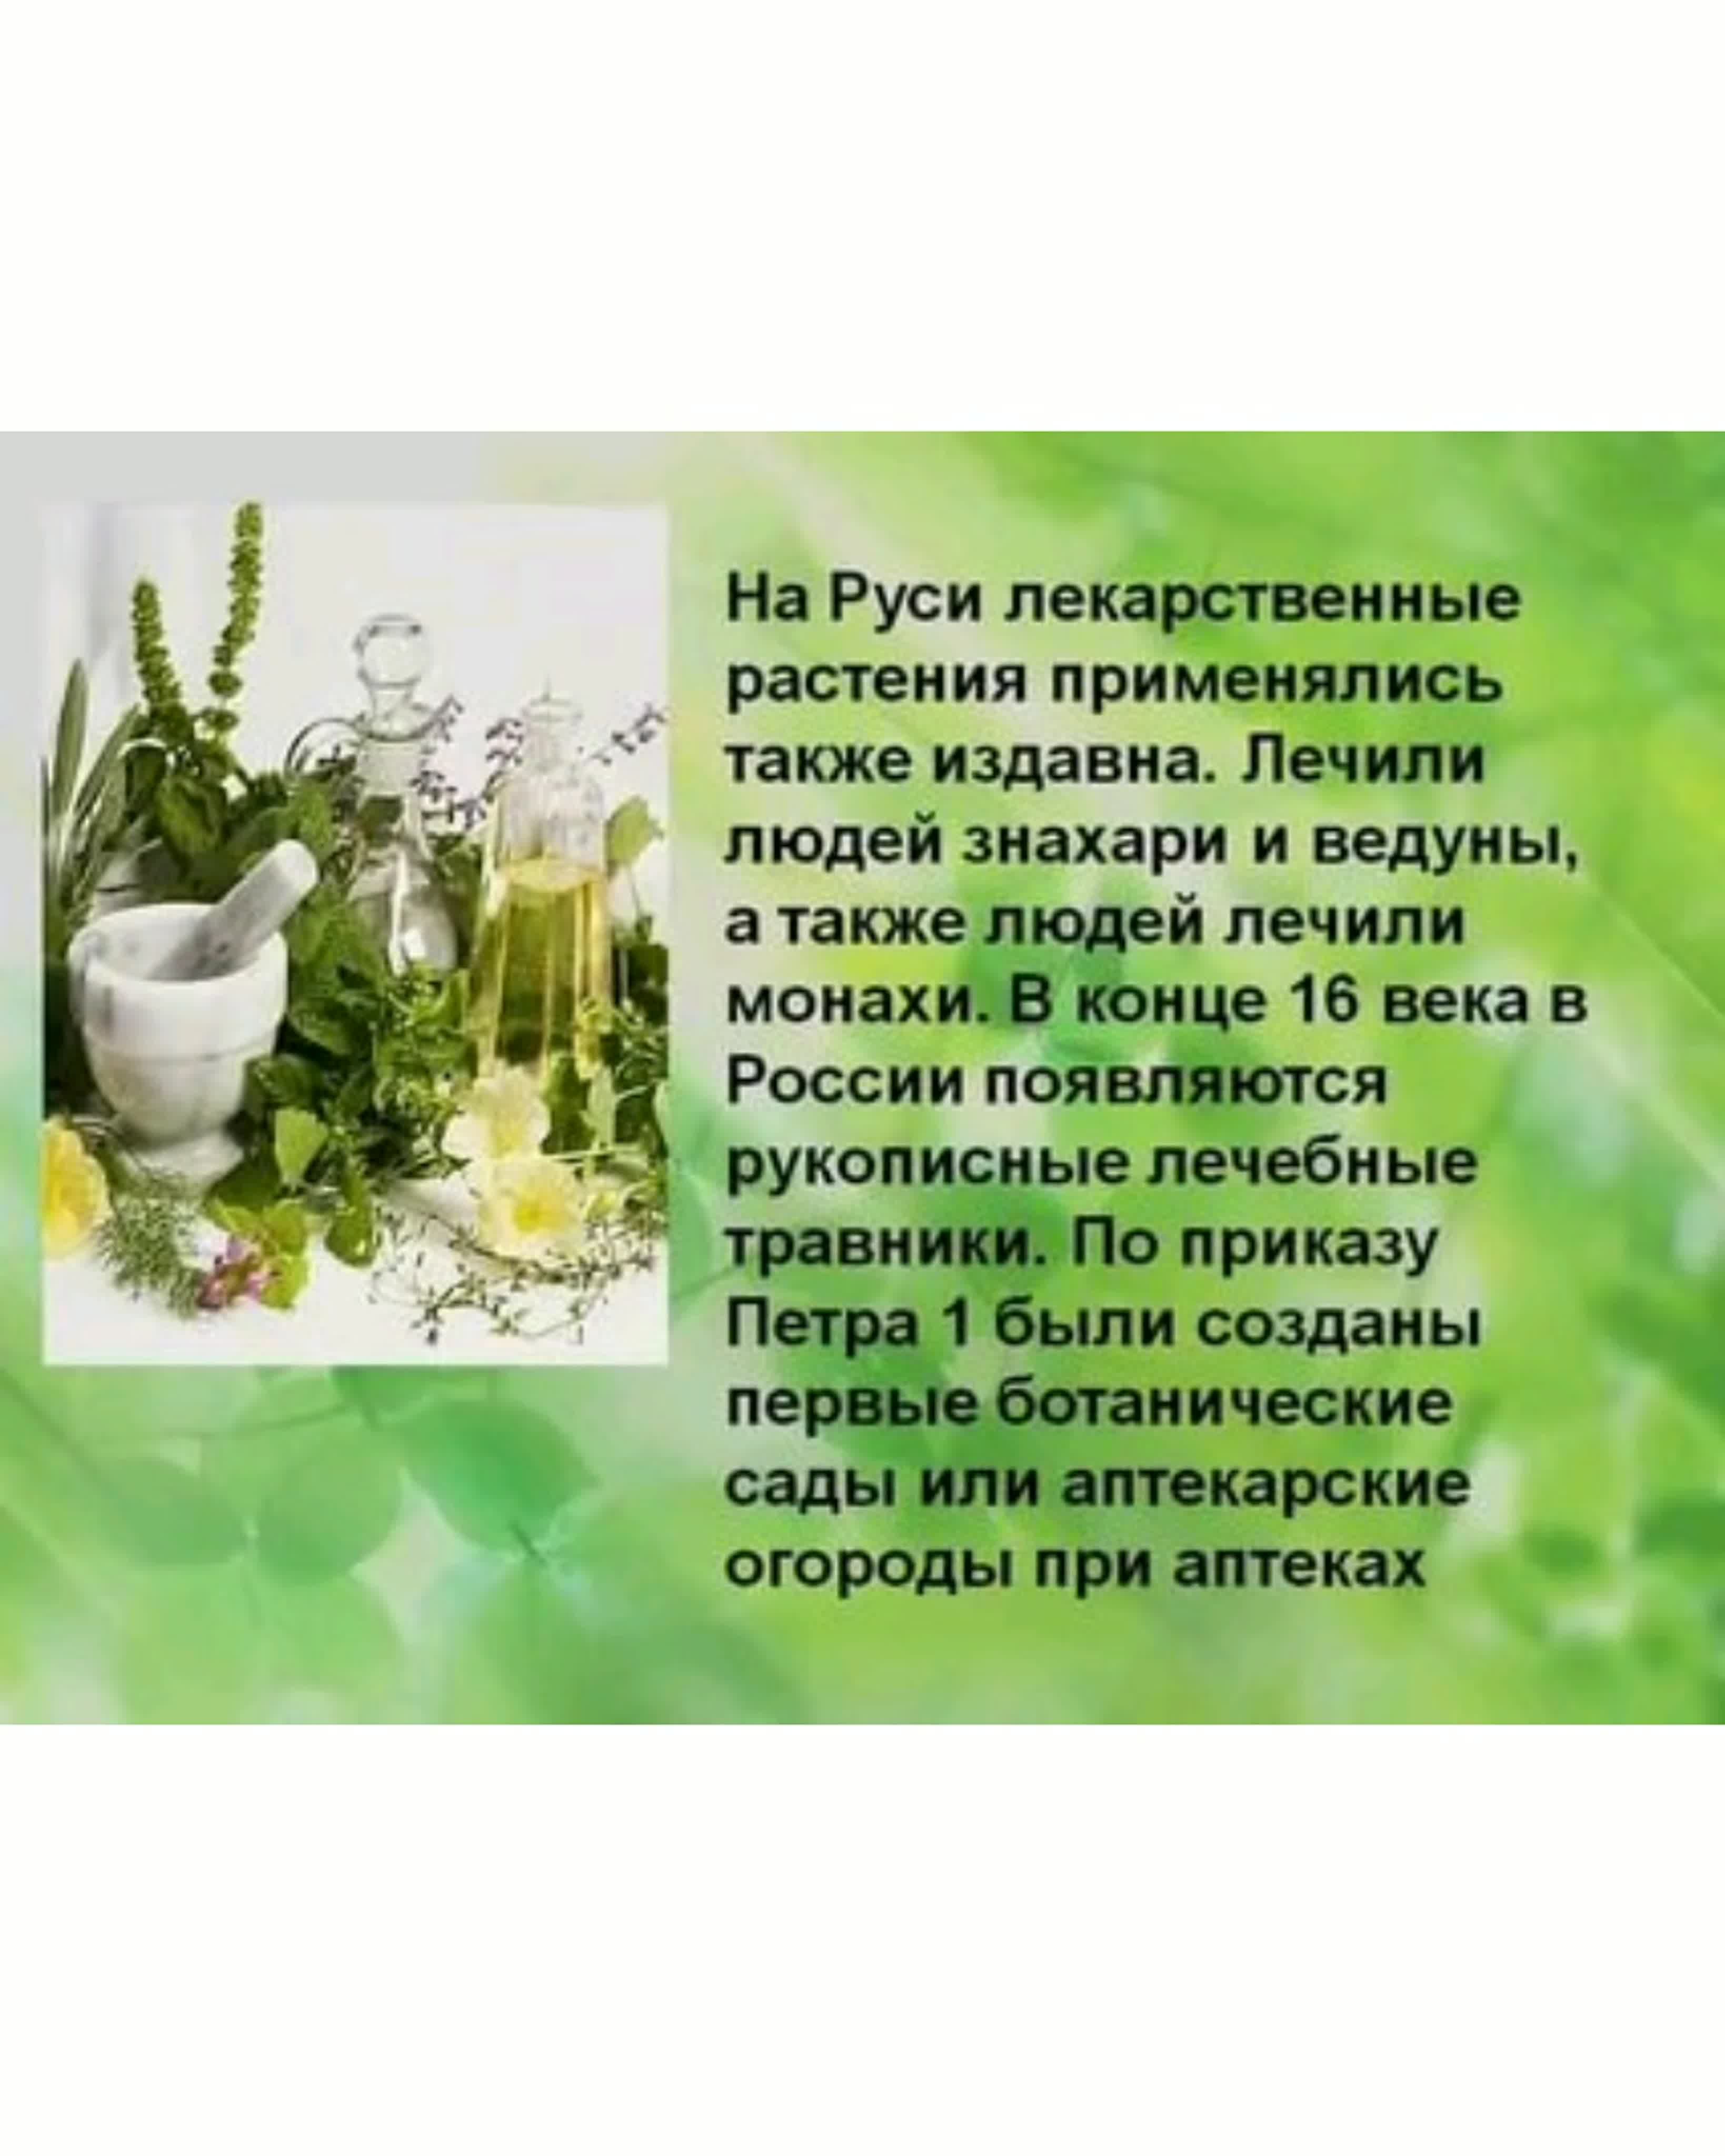 Лекарственные растения презентация